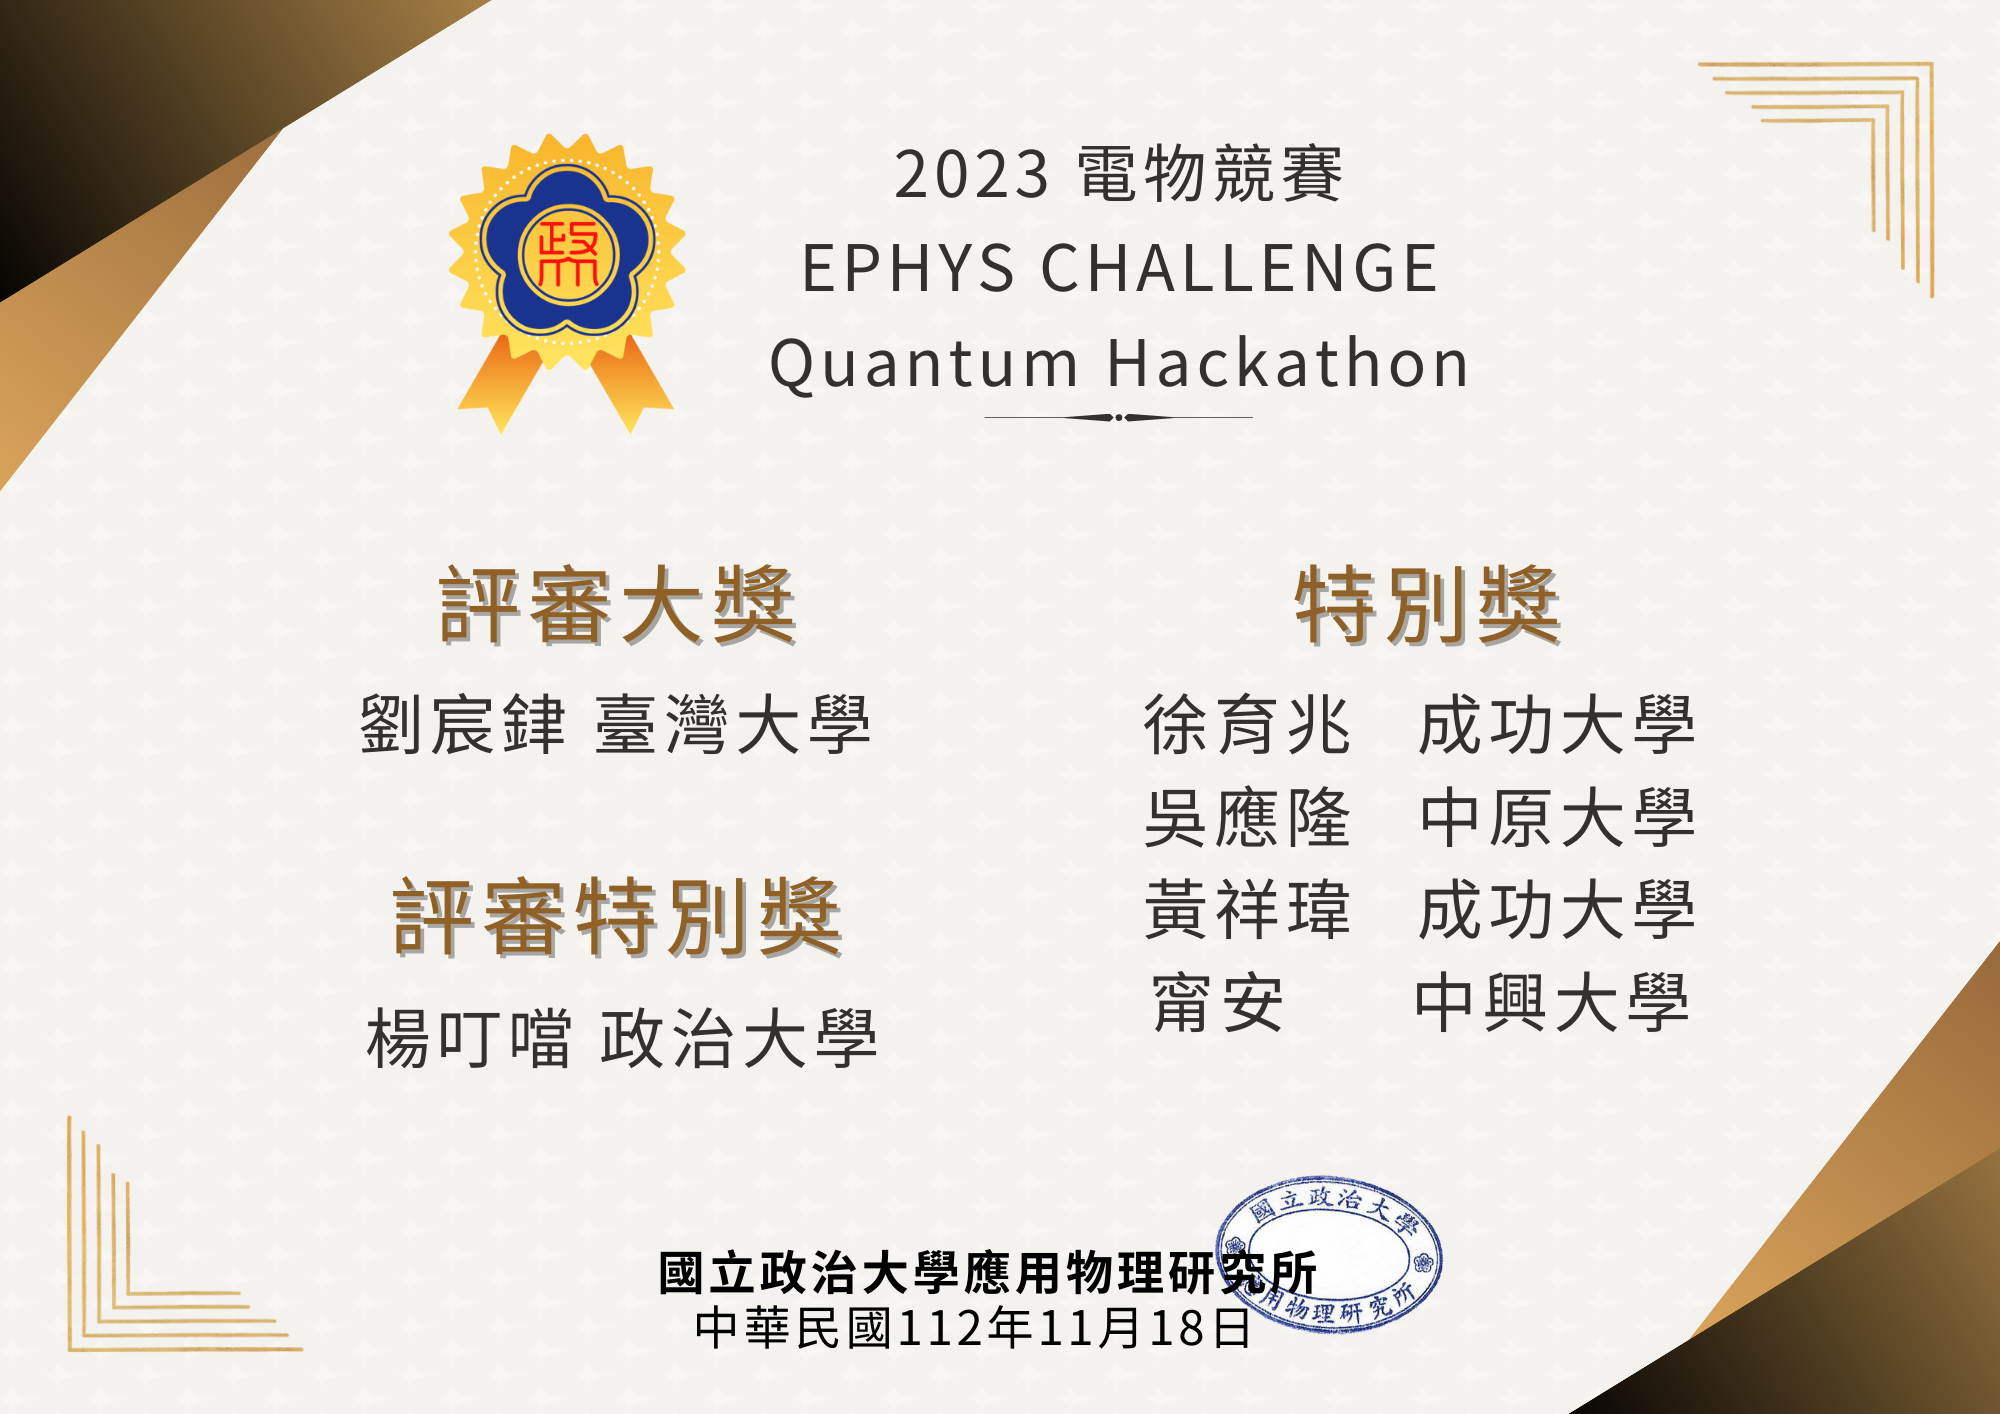 2023 電物競賽Ephys Challenge -Quantum Hackathon/獲獎公告